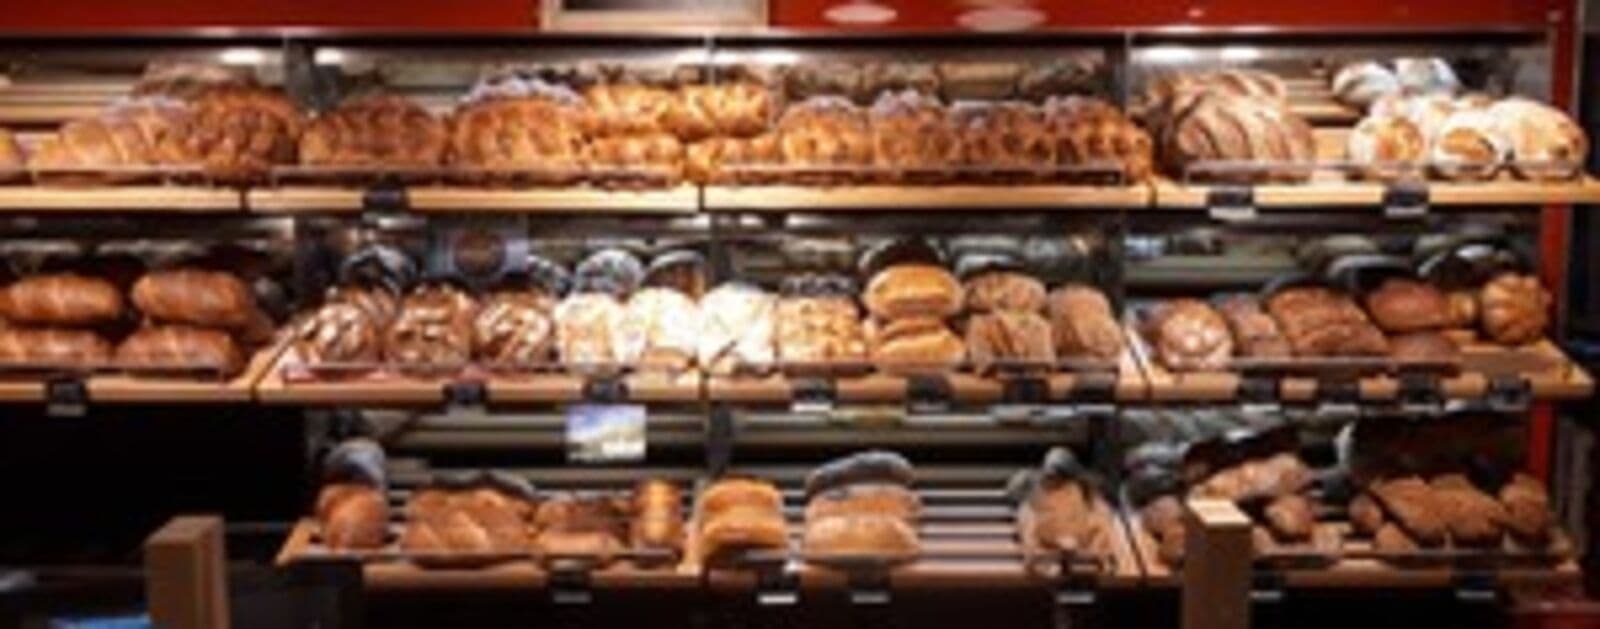 Jeden Monat das aktuelle Brot. Wenn sie dieses Brot wählen, kommt jeden Monat automatisch das aktuelle Brot. Um zu wissen welches Brot gerade an der Reihe ist, haben wir das Monatsbrot immer auch noch parallel aufgeschaltet.